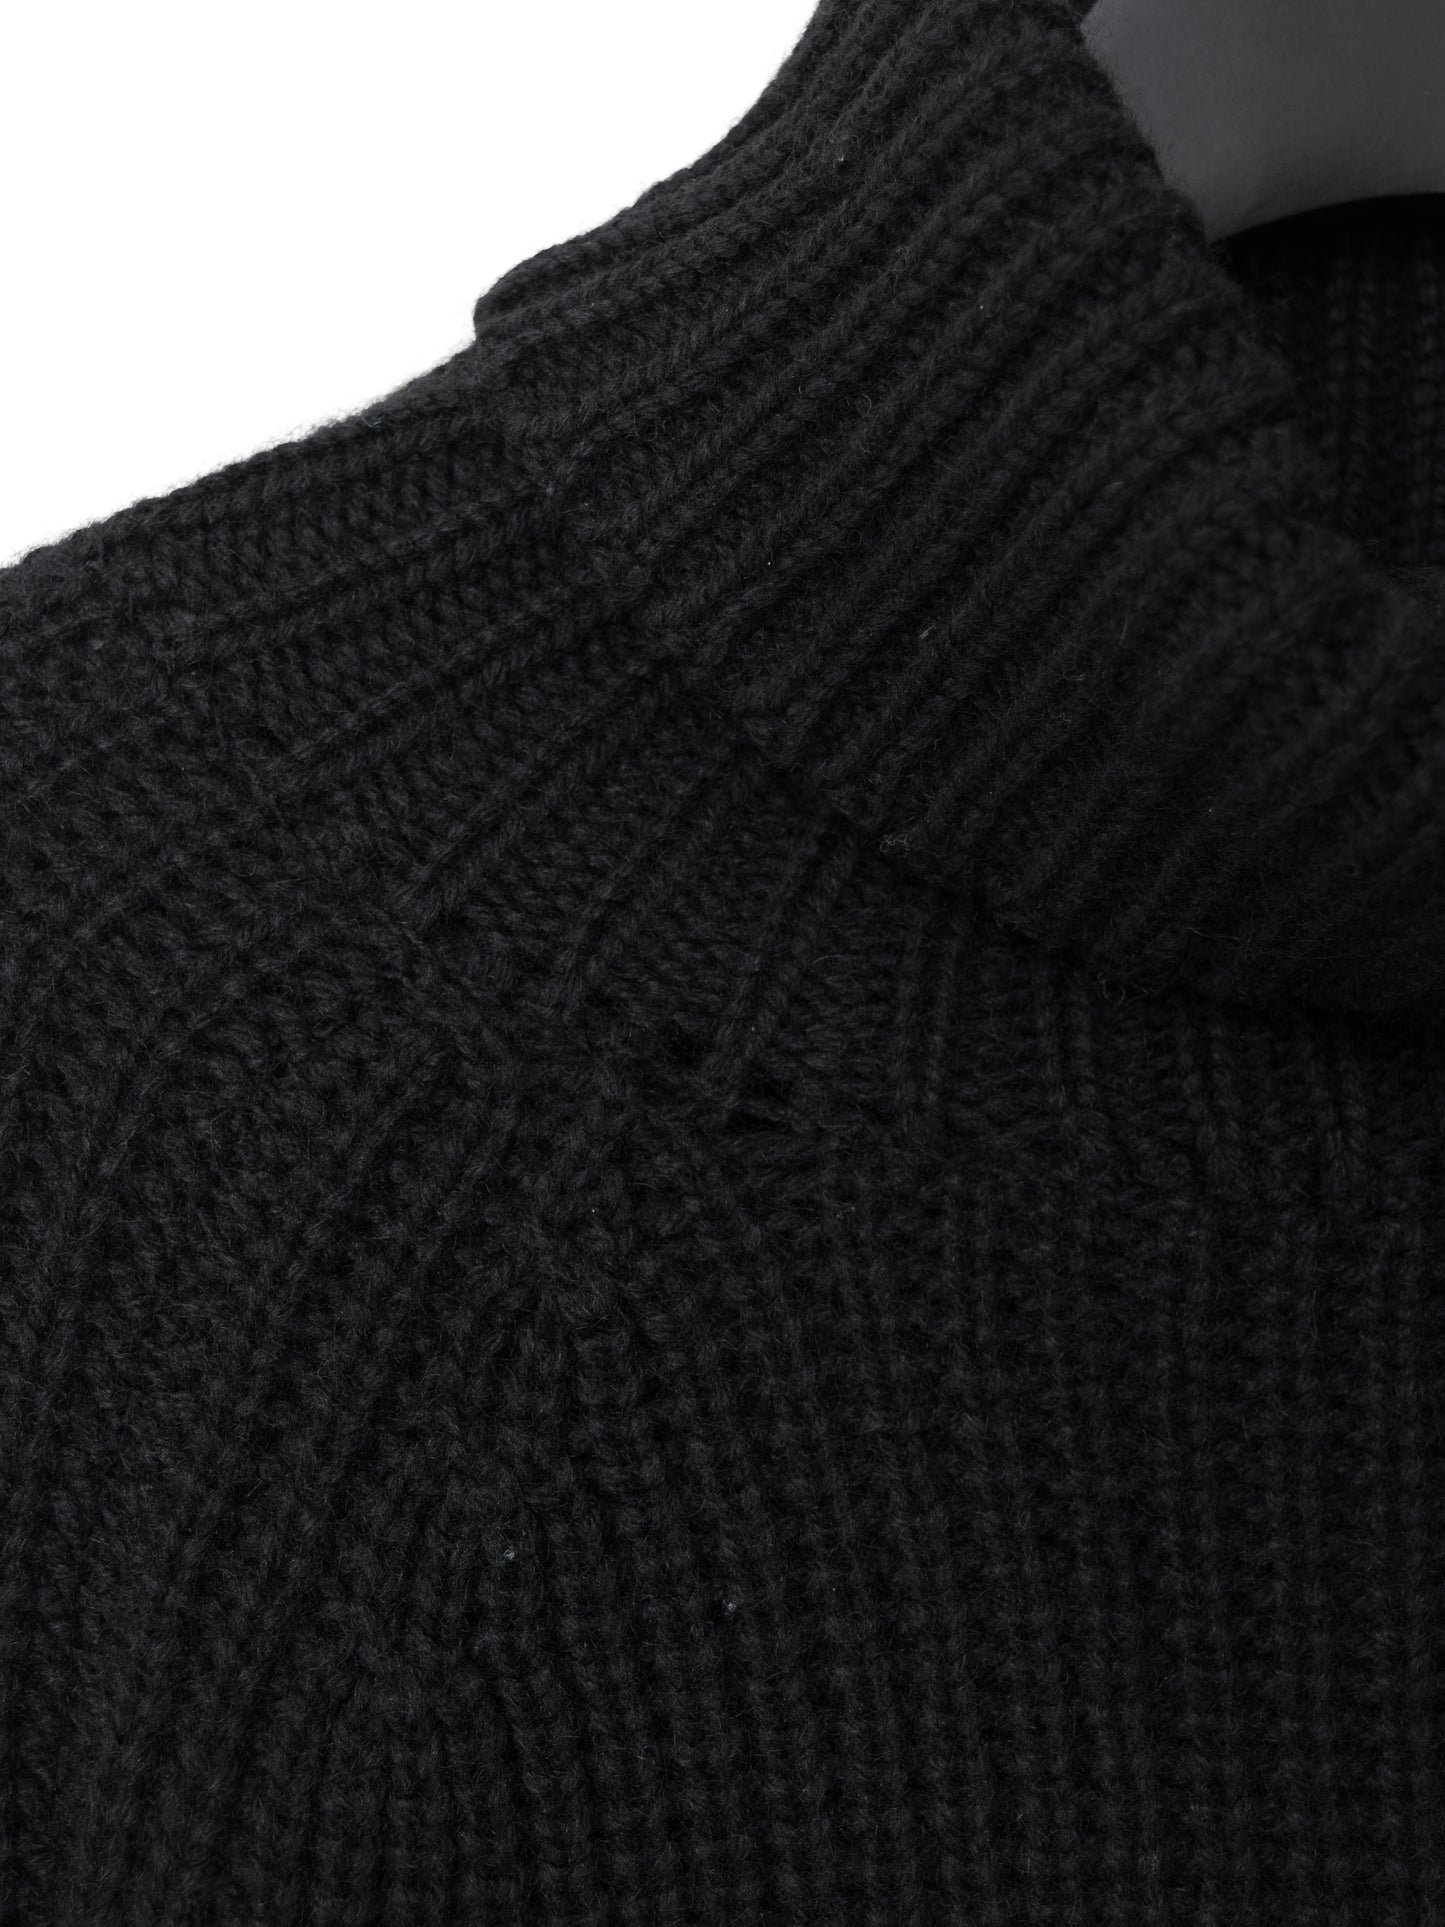 a/w 03 heavy funnelneck sweater black ∙ wool ∙ medium